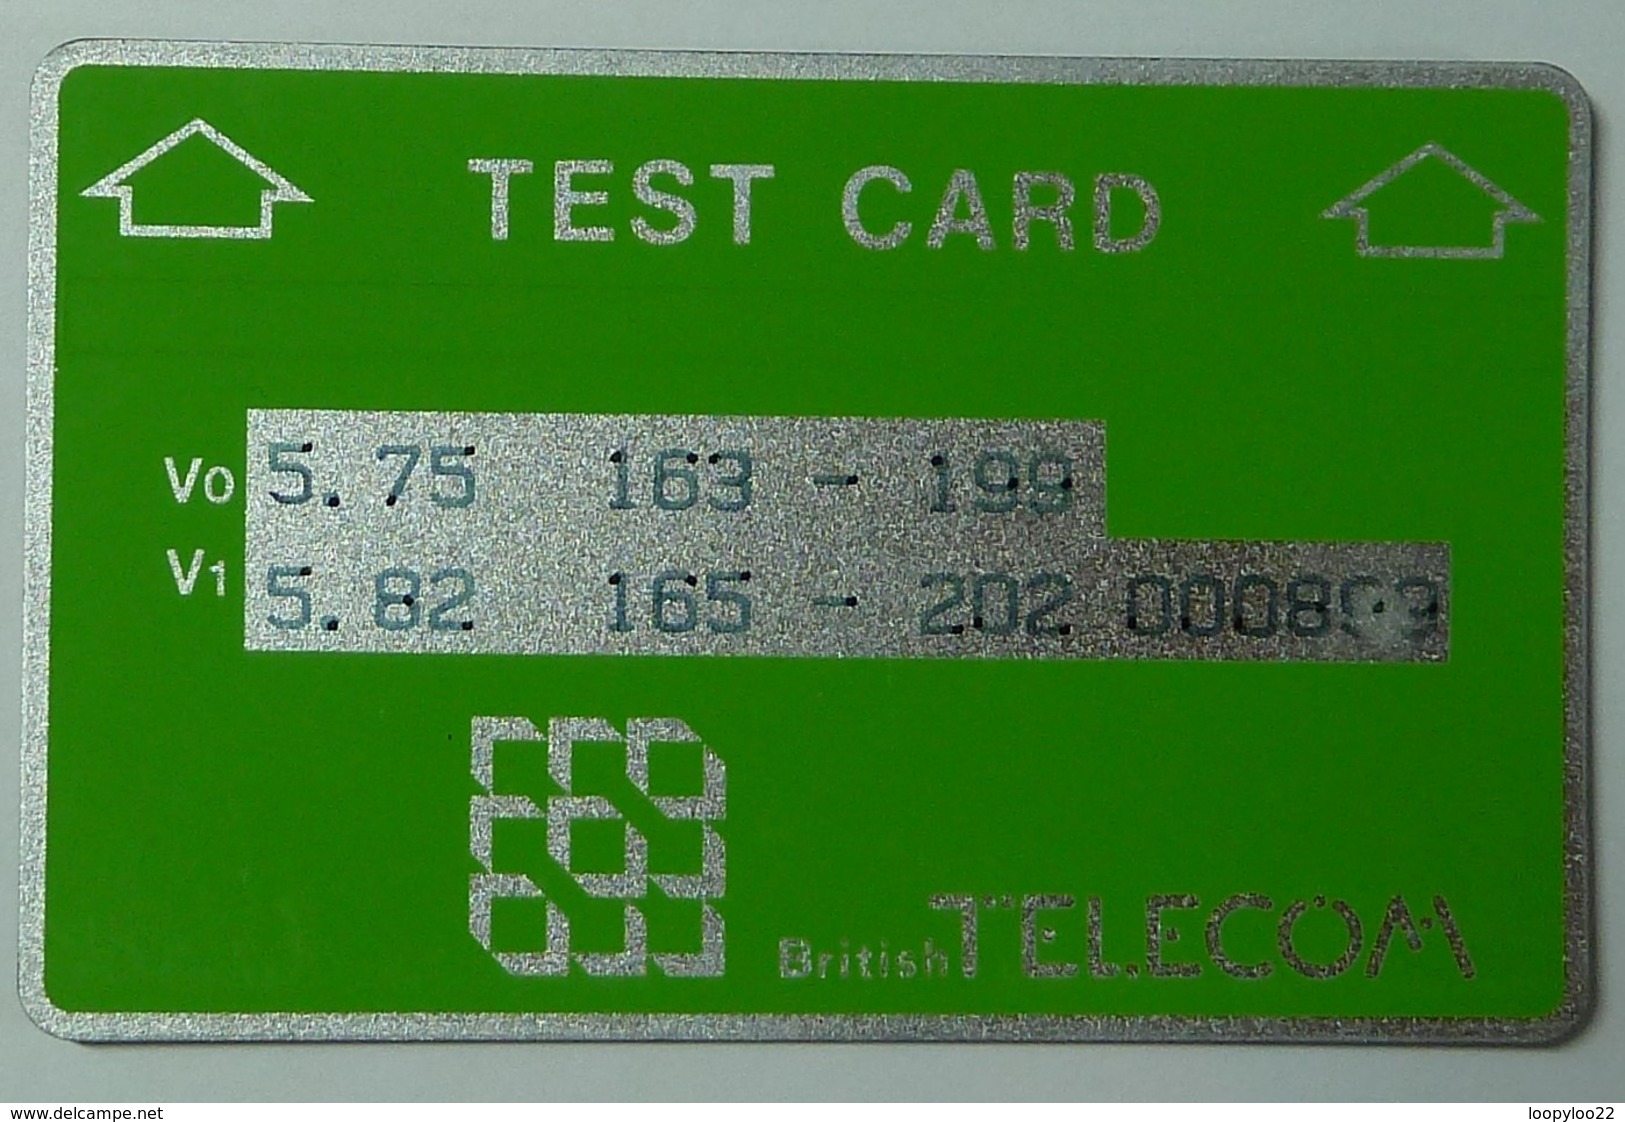 UK - Great Britain - L&G - BTT002 - Matt Finish - Green Test - 000899 - Mint - RR - BT Engineer BSK Ediciones De Servicio Y Test